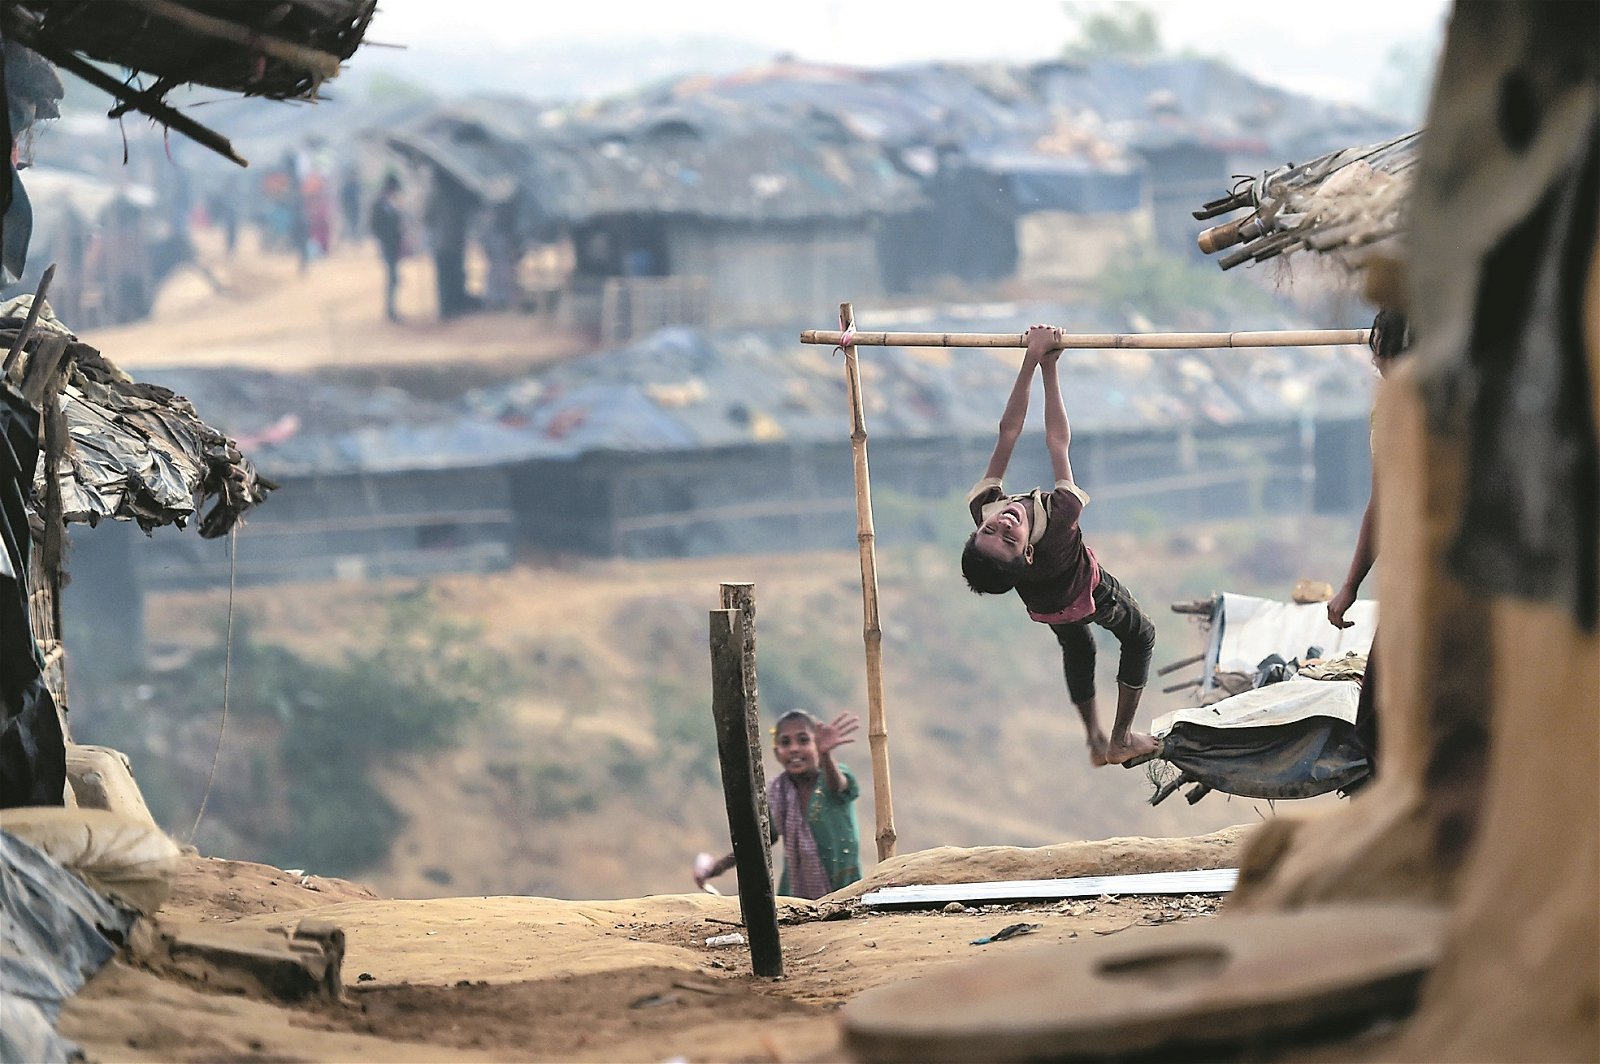 罗兴亚危机自去年8月25日爆发以来，有逾65万罗兴亚人逃离缅甸。缅甸政府称8月的军事行动，是回应罗兴亚武装分子的袭击。图为逃到孟加拉国的一名罗兴亚男孩，在难民营外游戏。